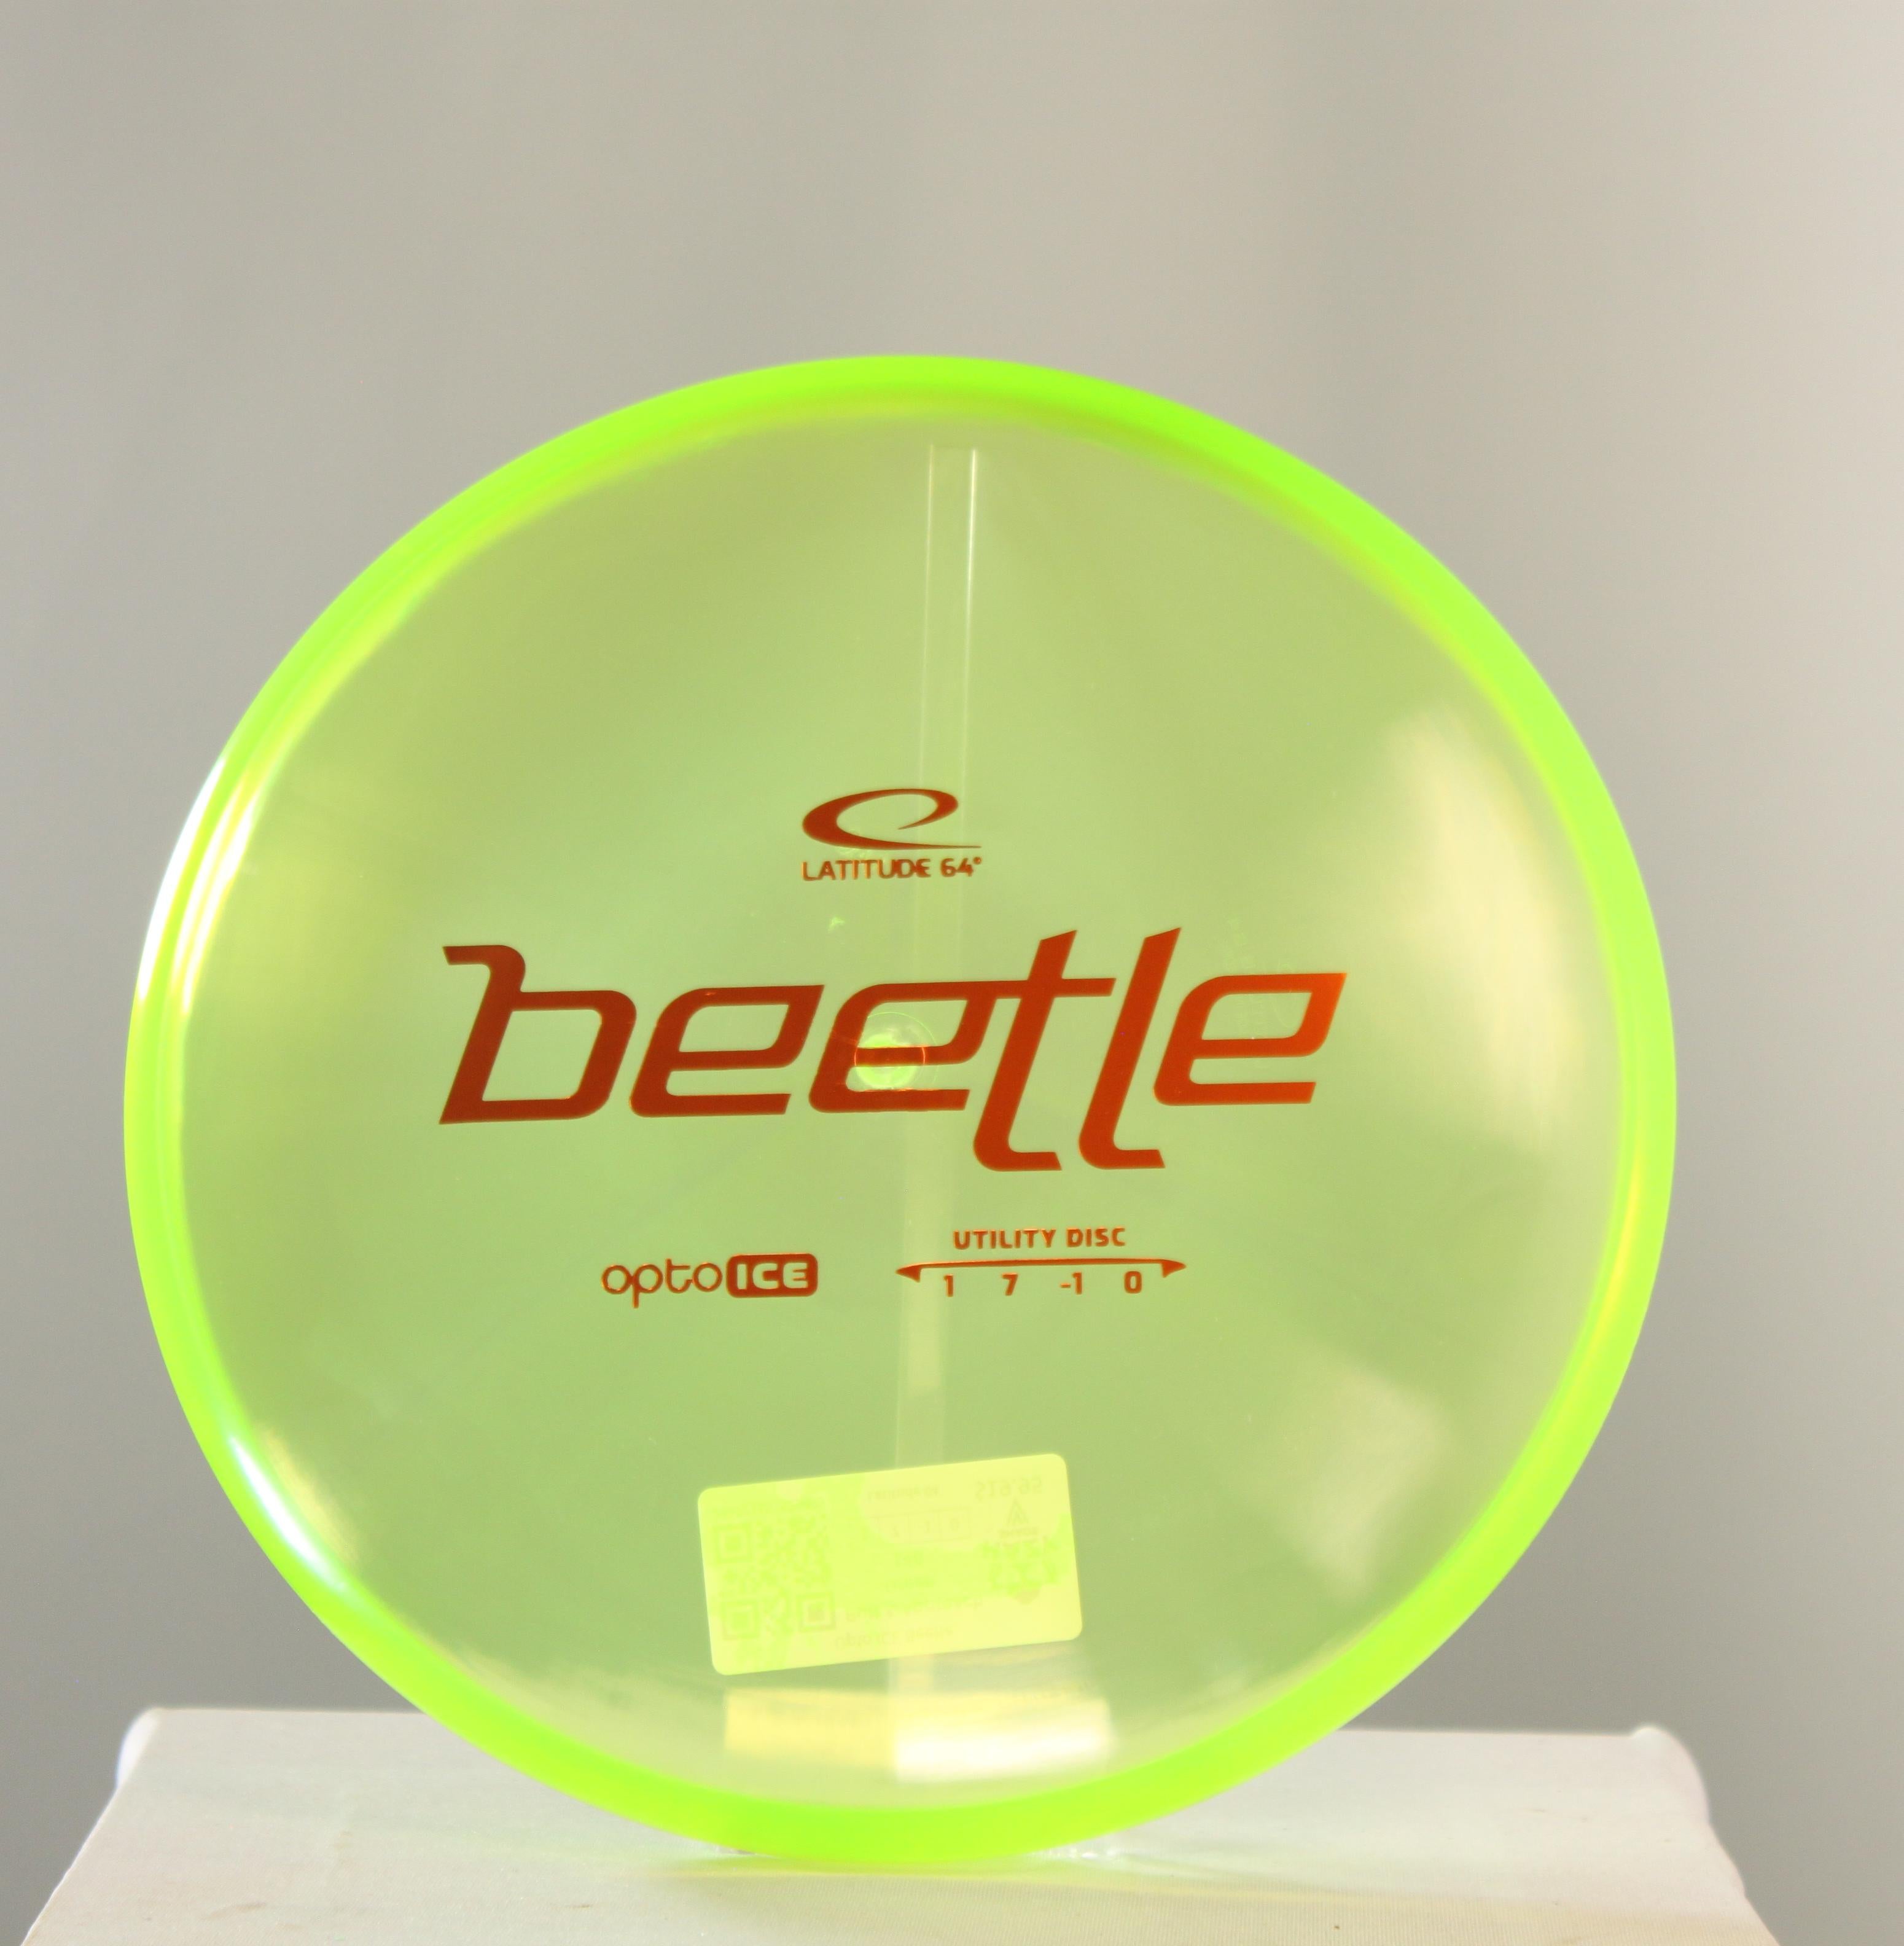 Opto ICE Beetle